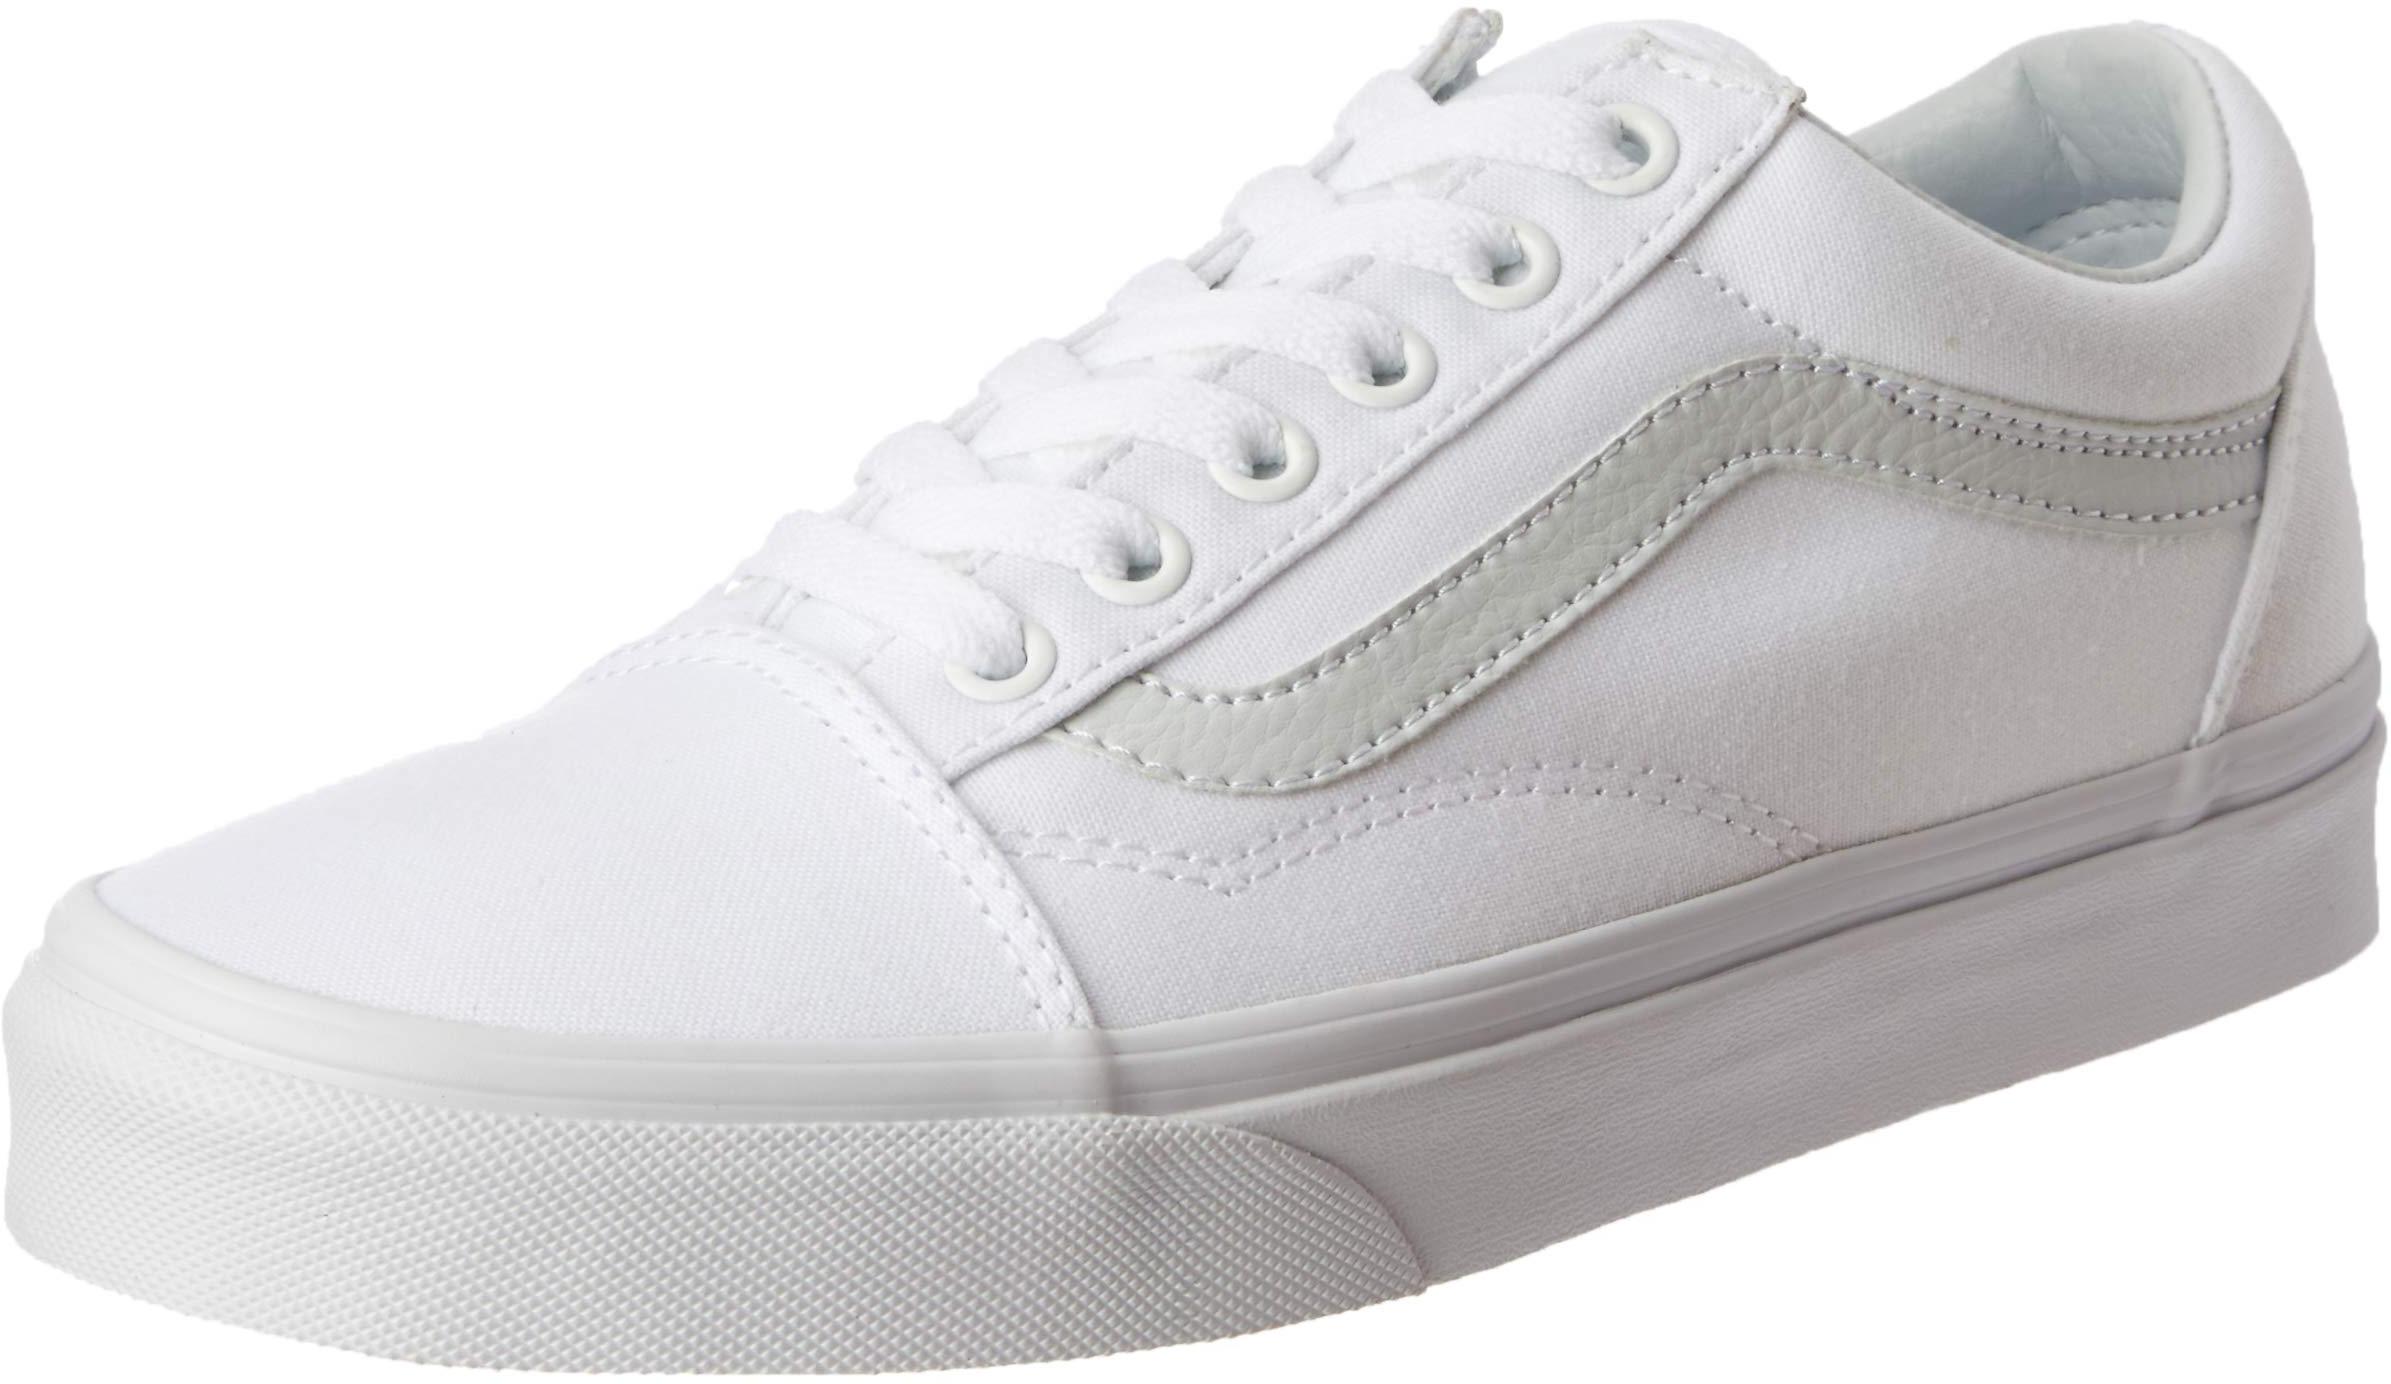 Vans Unisex Old Skool Classic Skate Shoes - True White - 8